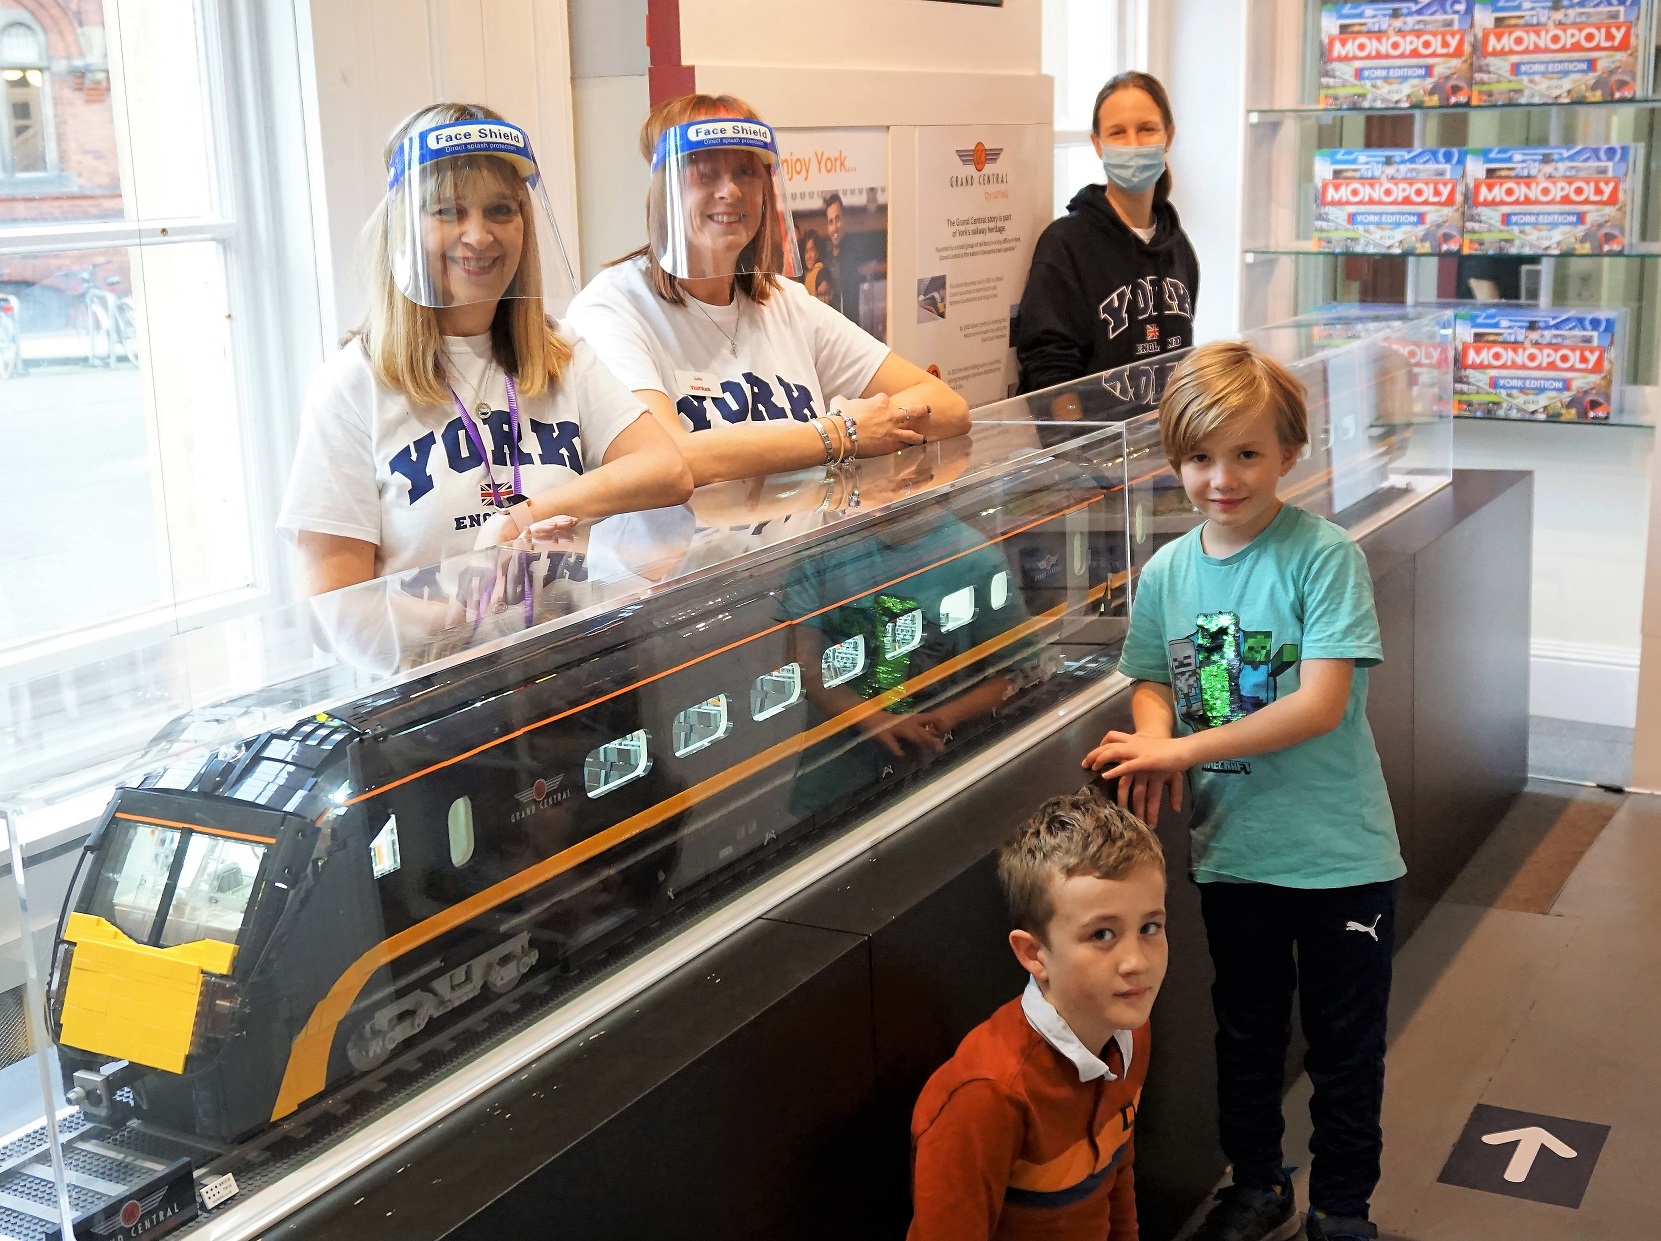 Lego Grand Central train in the Make It York visitors' centre